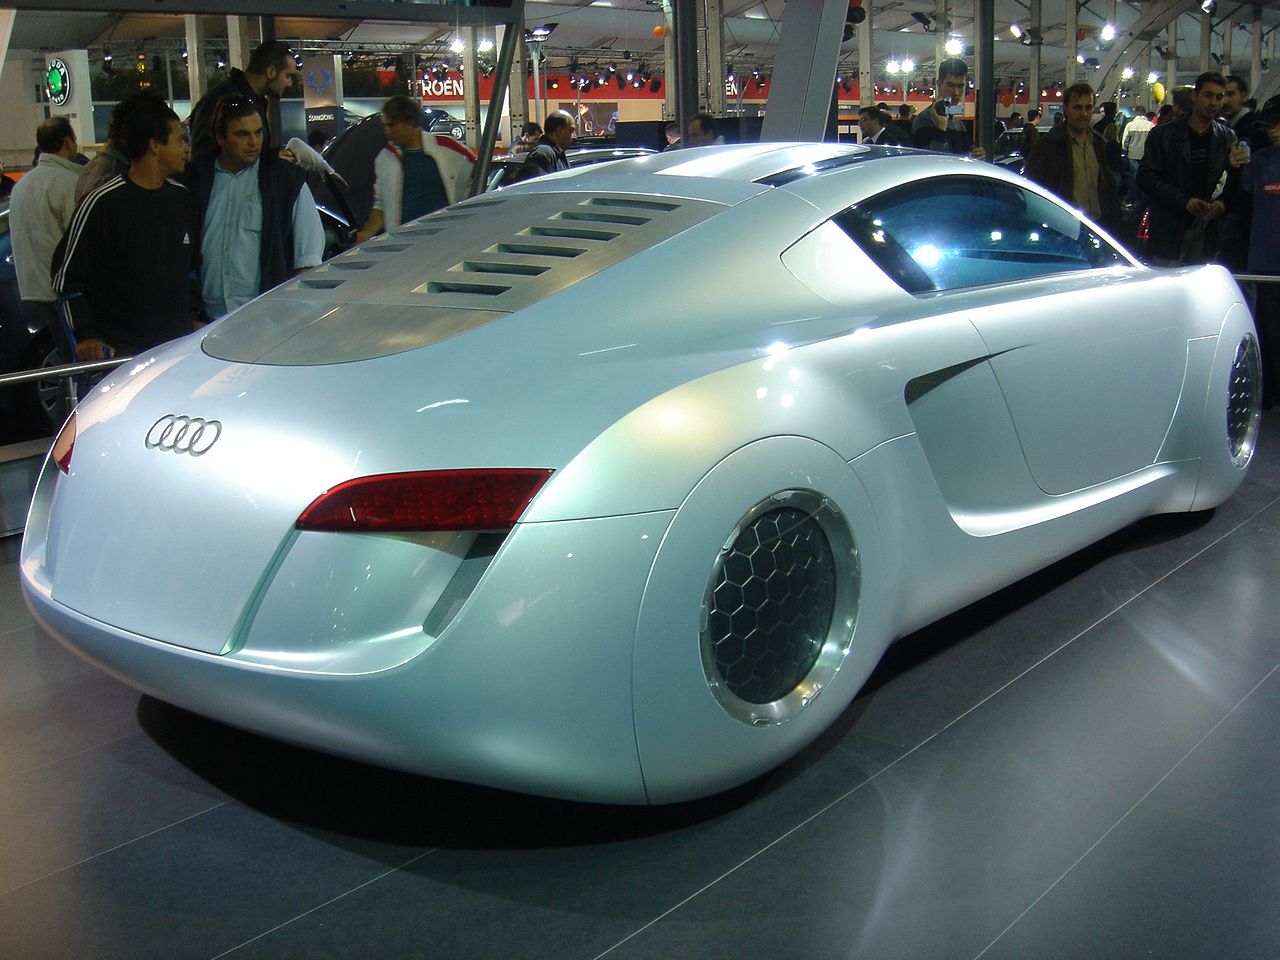 Audi quattro concept - Wikipedia